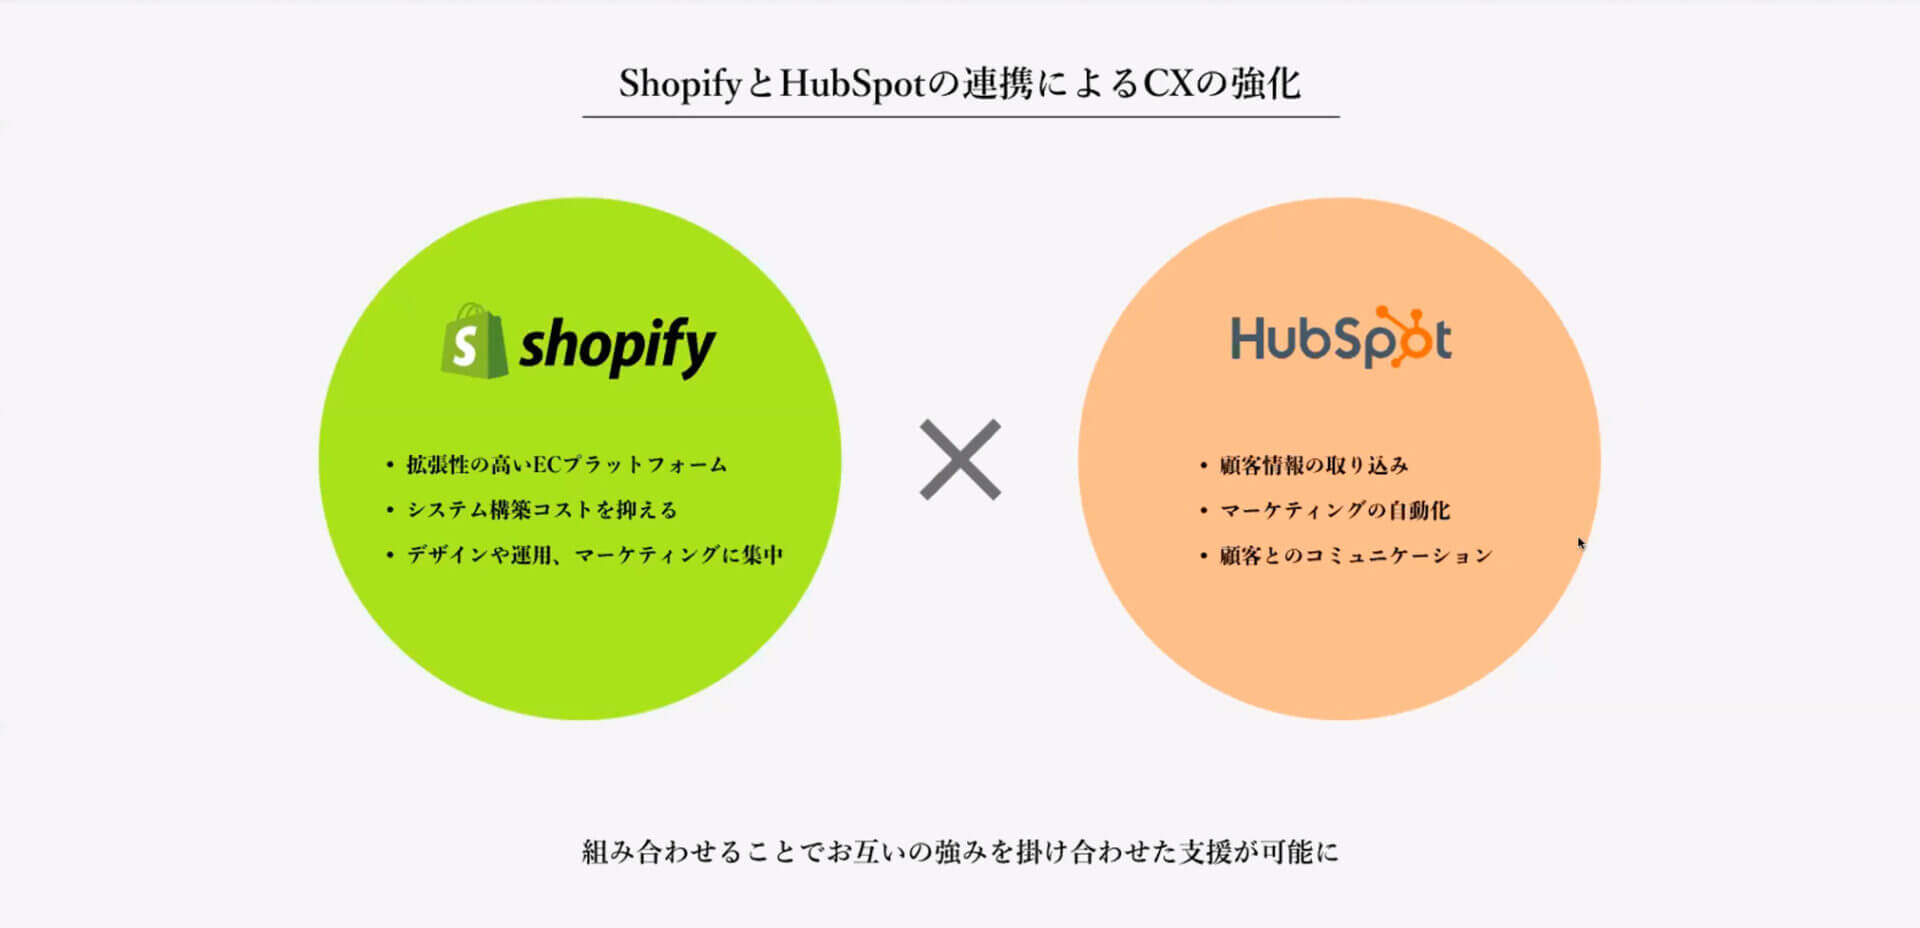 HubSpotとShopify連携におけるCX強化説明